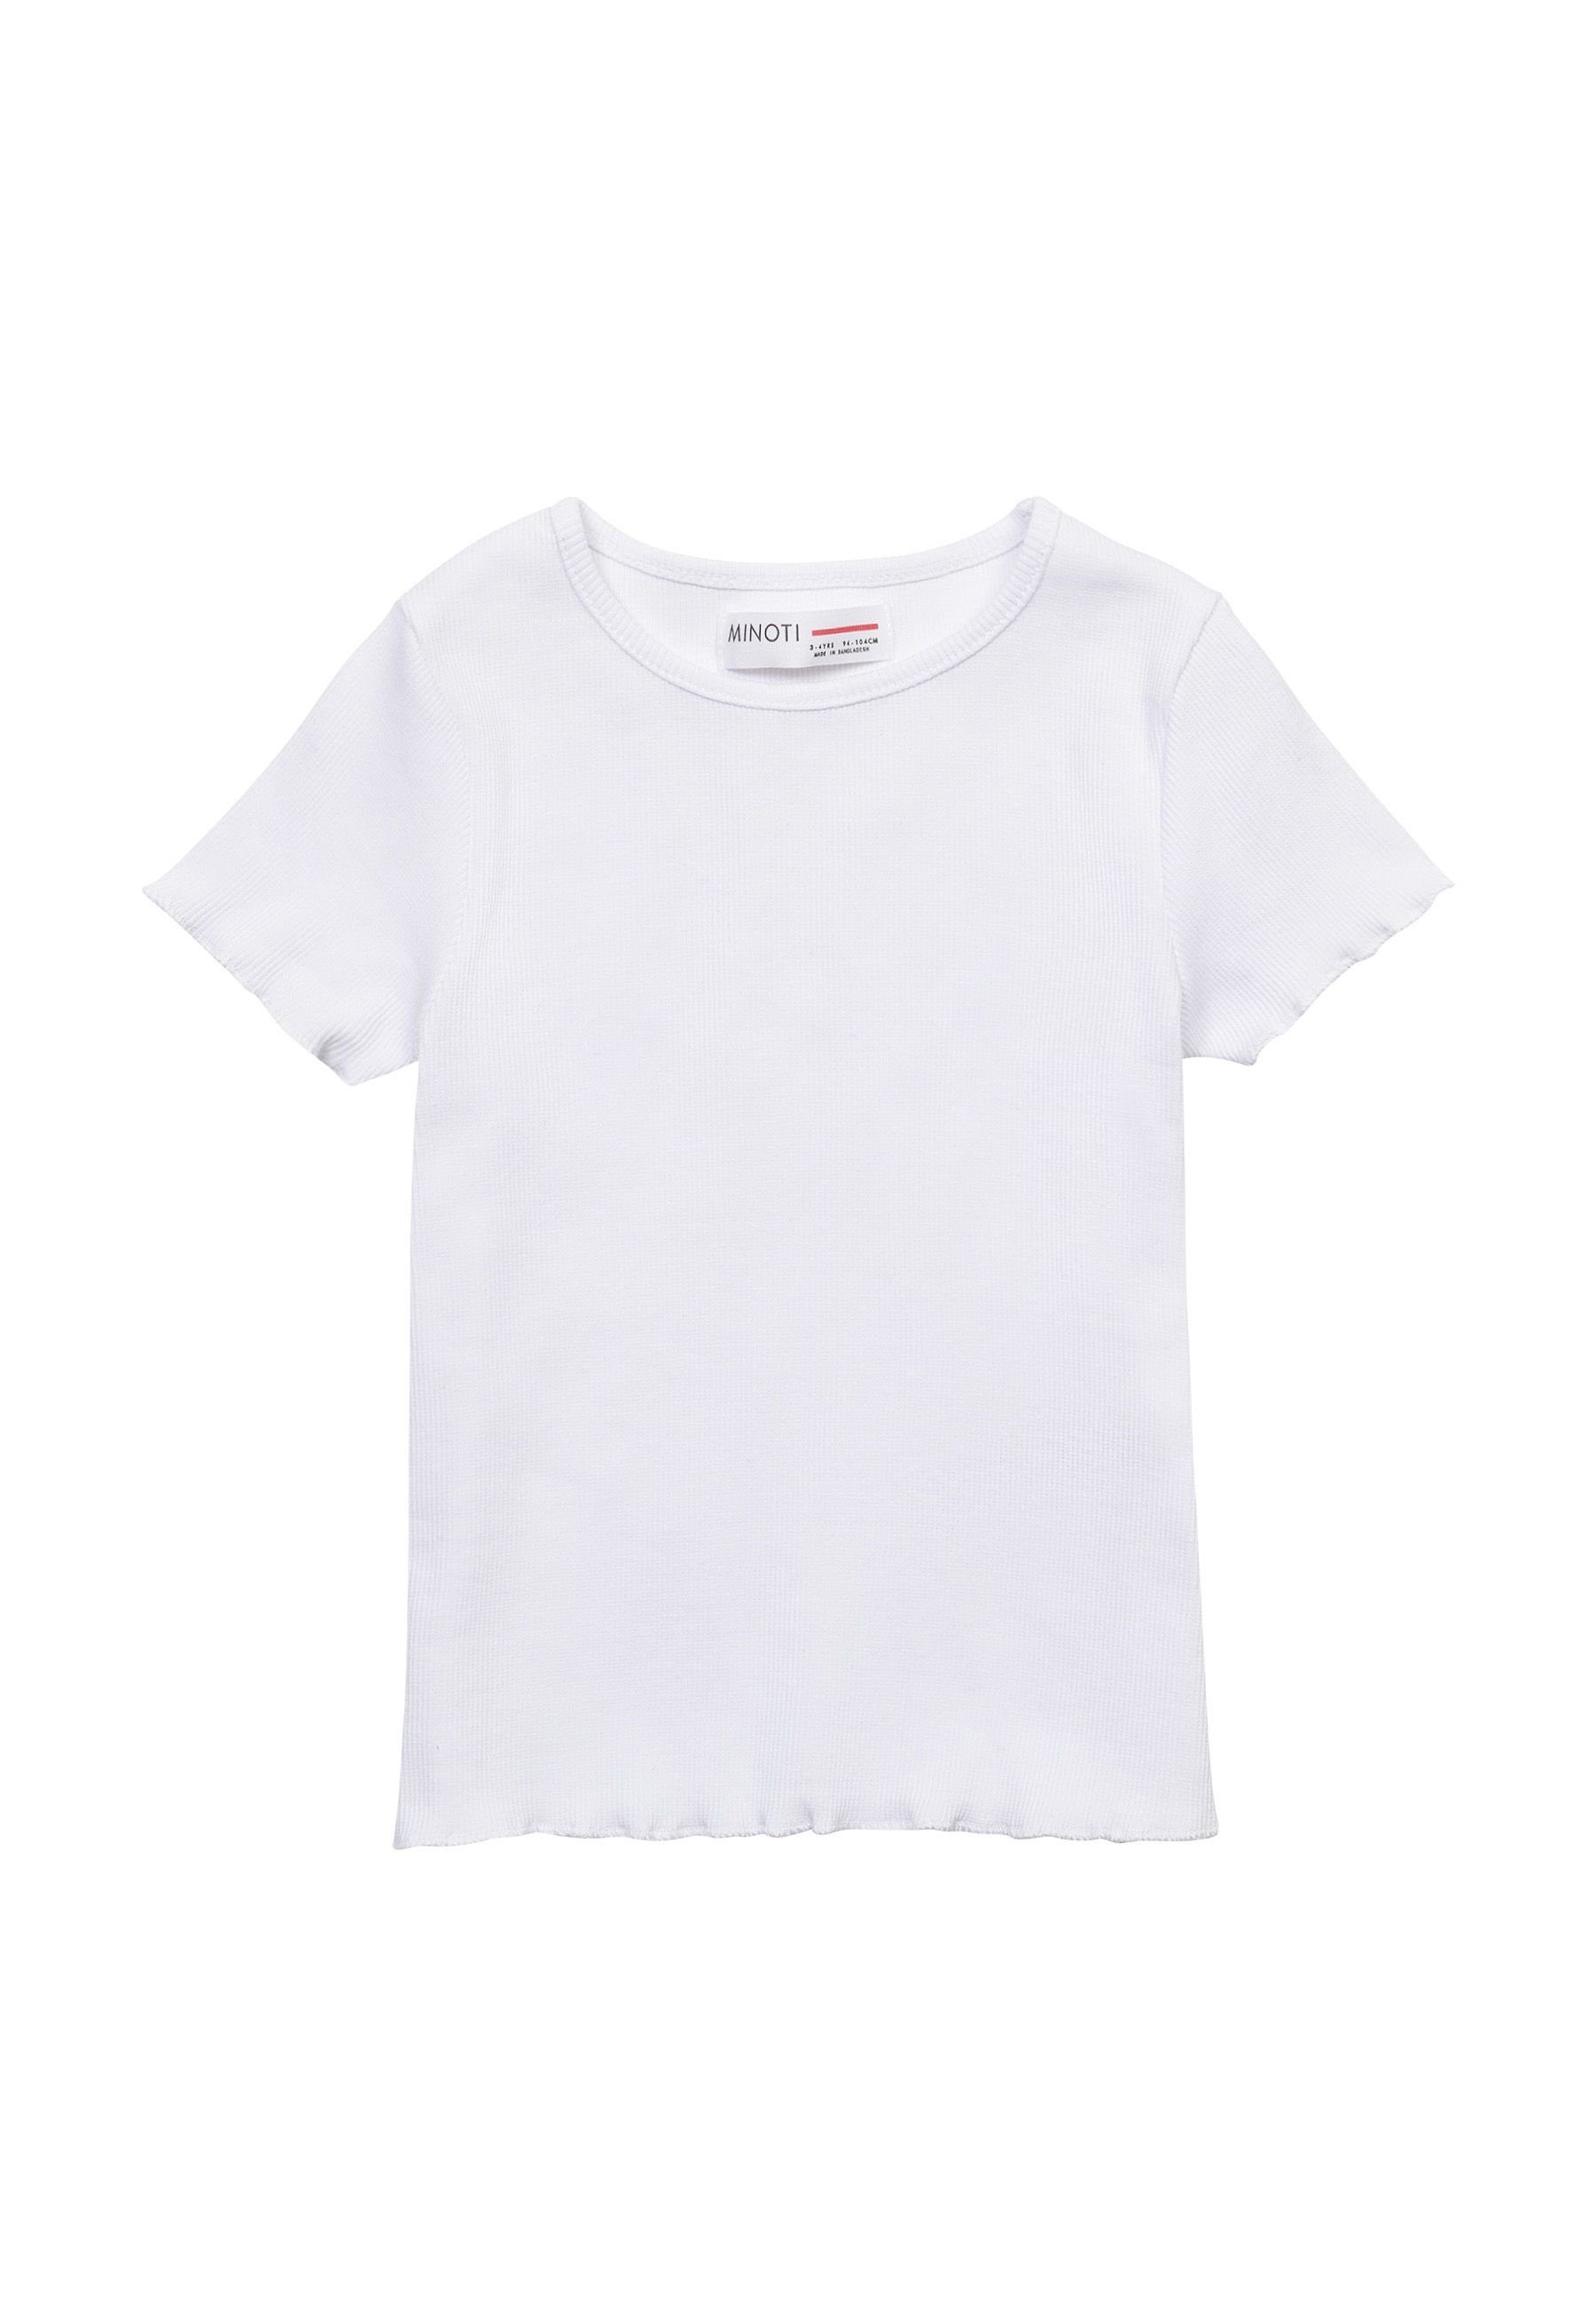 MINOTI T-Shirt Einfaches Sommer T-Shirt (1y-14y) Weiß